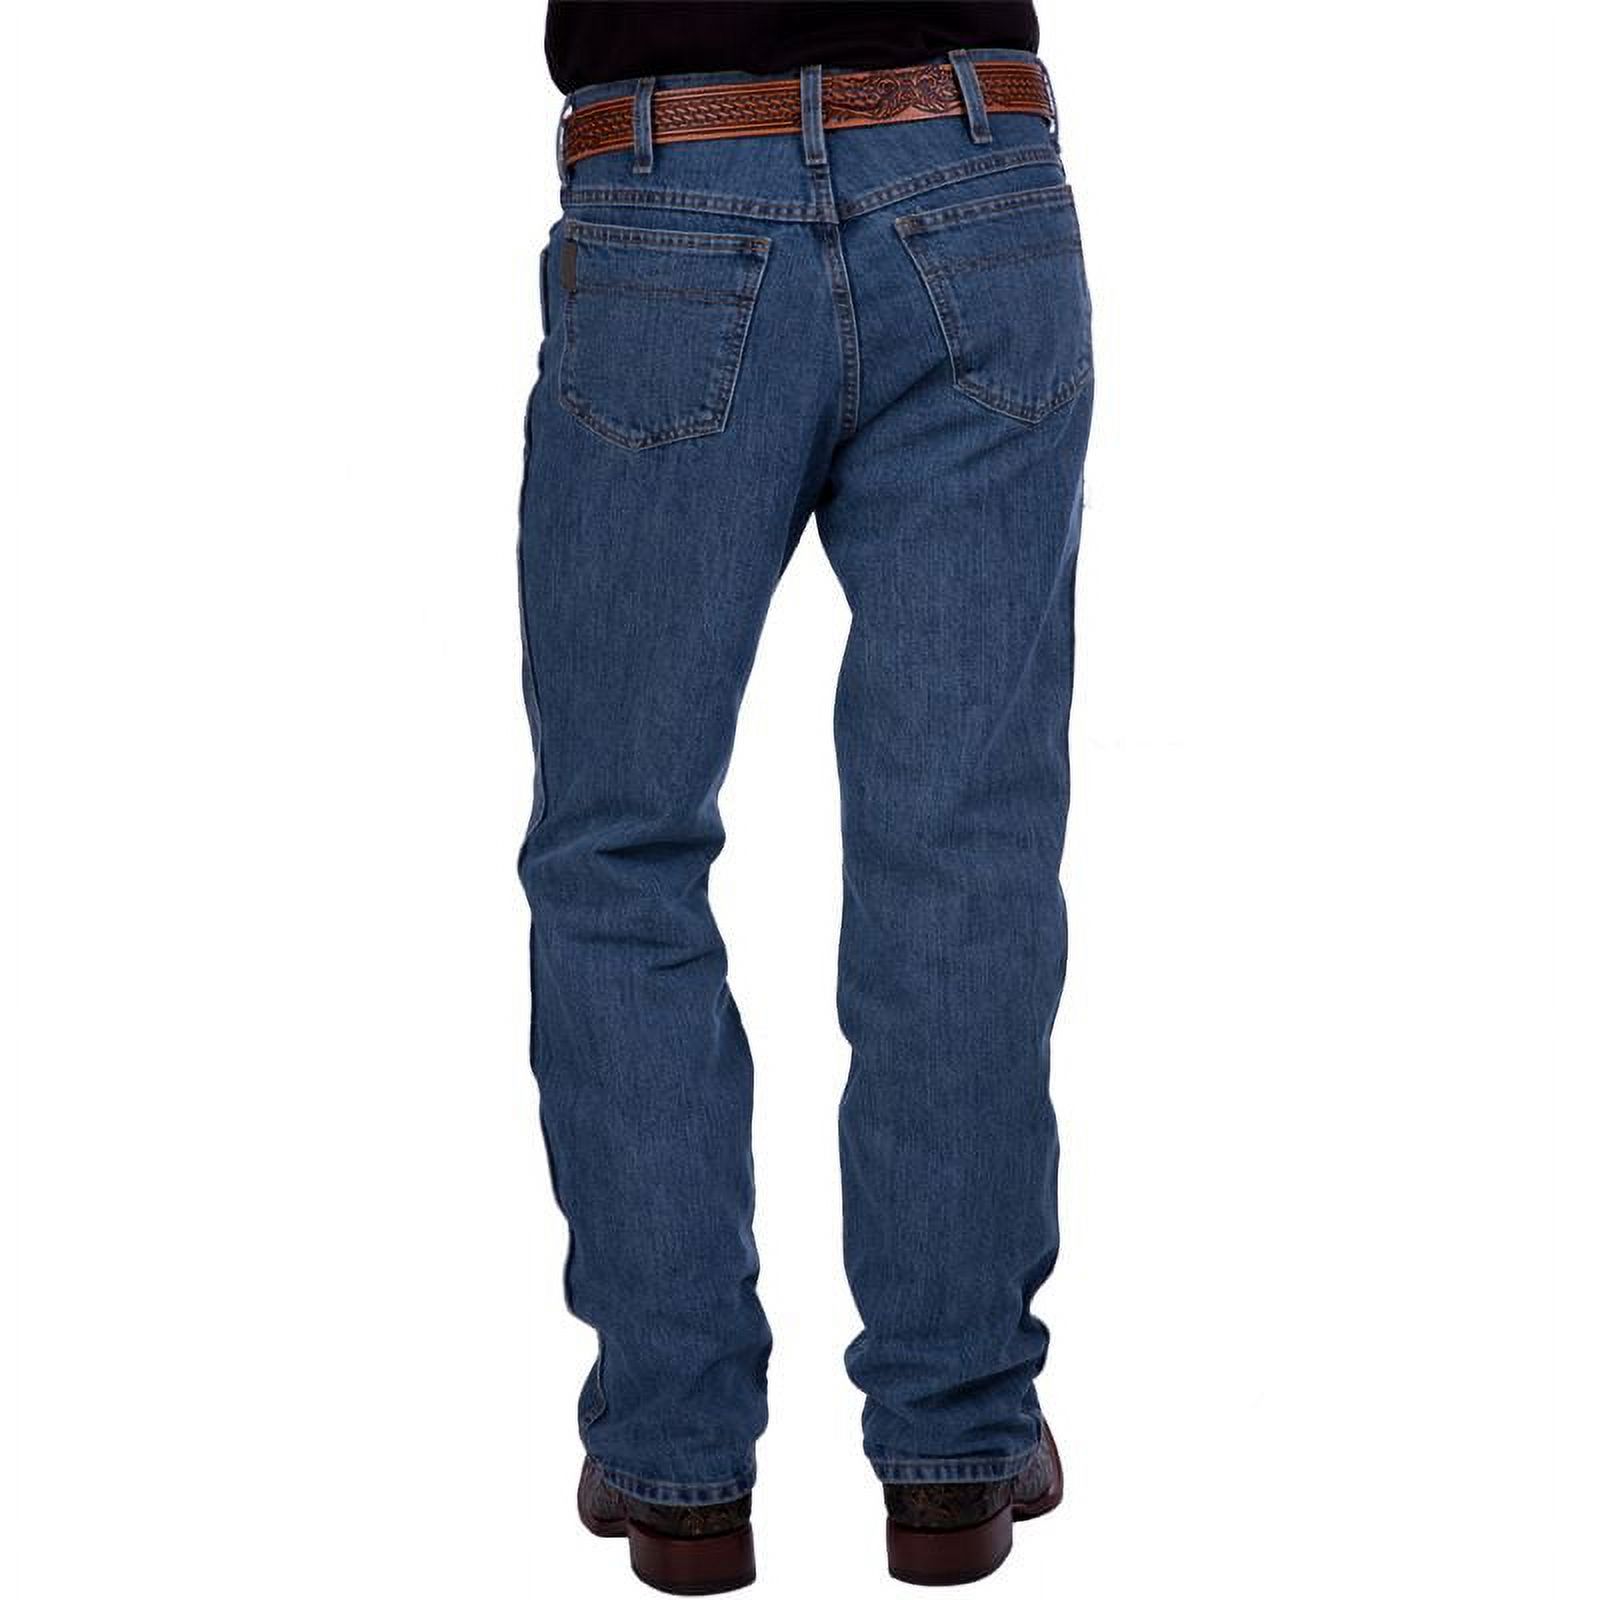 Cinch Western Denim Jeans Mens Bronze Label Slim Med Stone MB90532001 - image 1 of 3